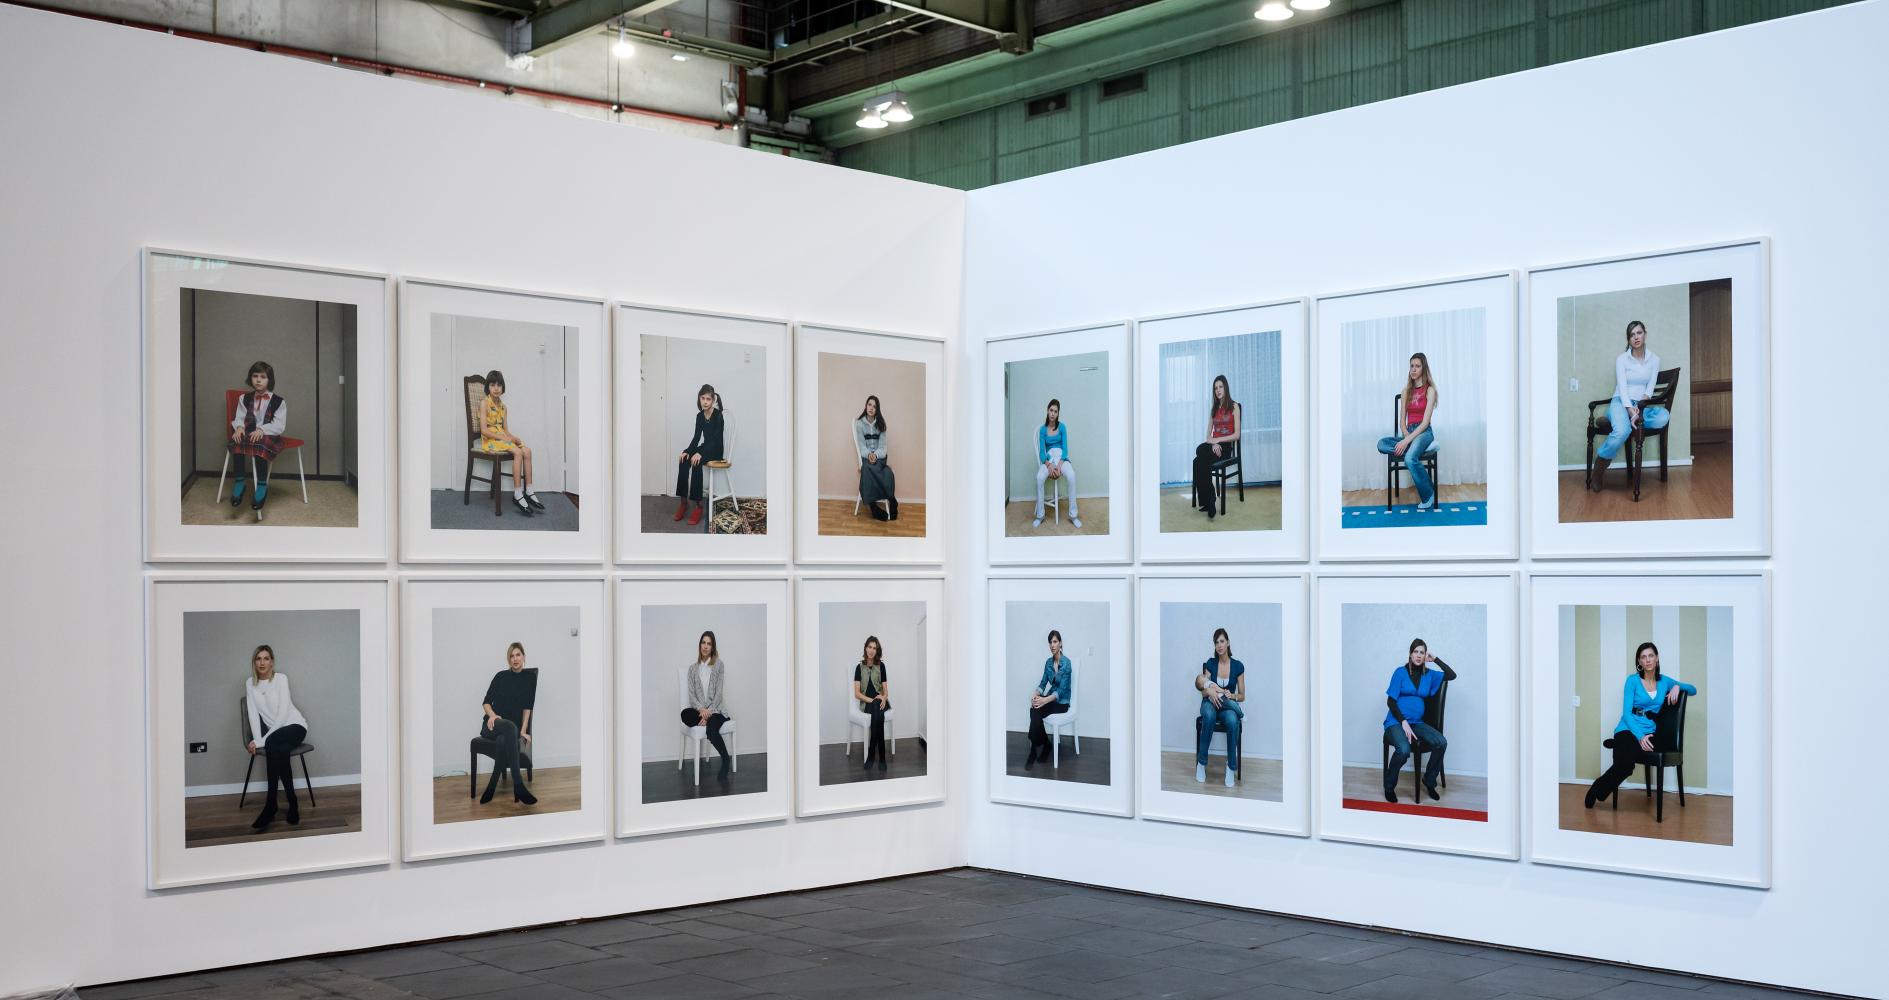 Fotografien von Rineke Dijkstra in der Ausstellung "Diversity United", Berlin 